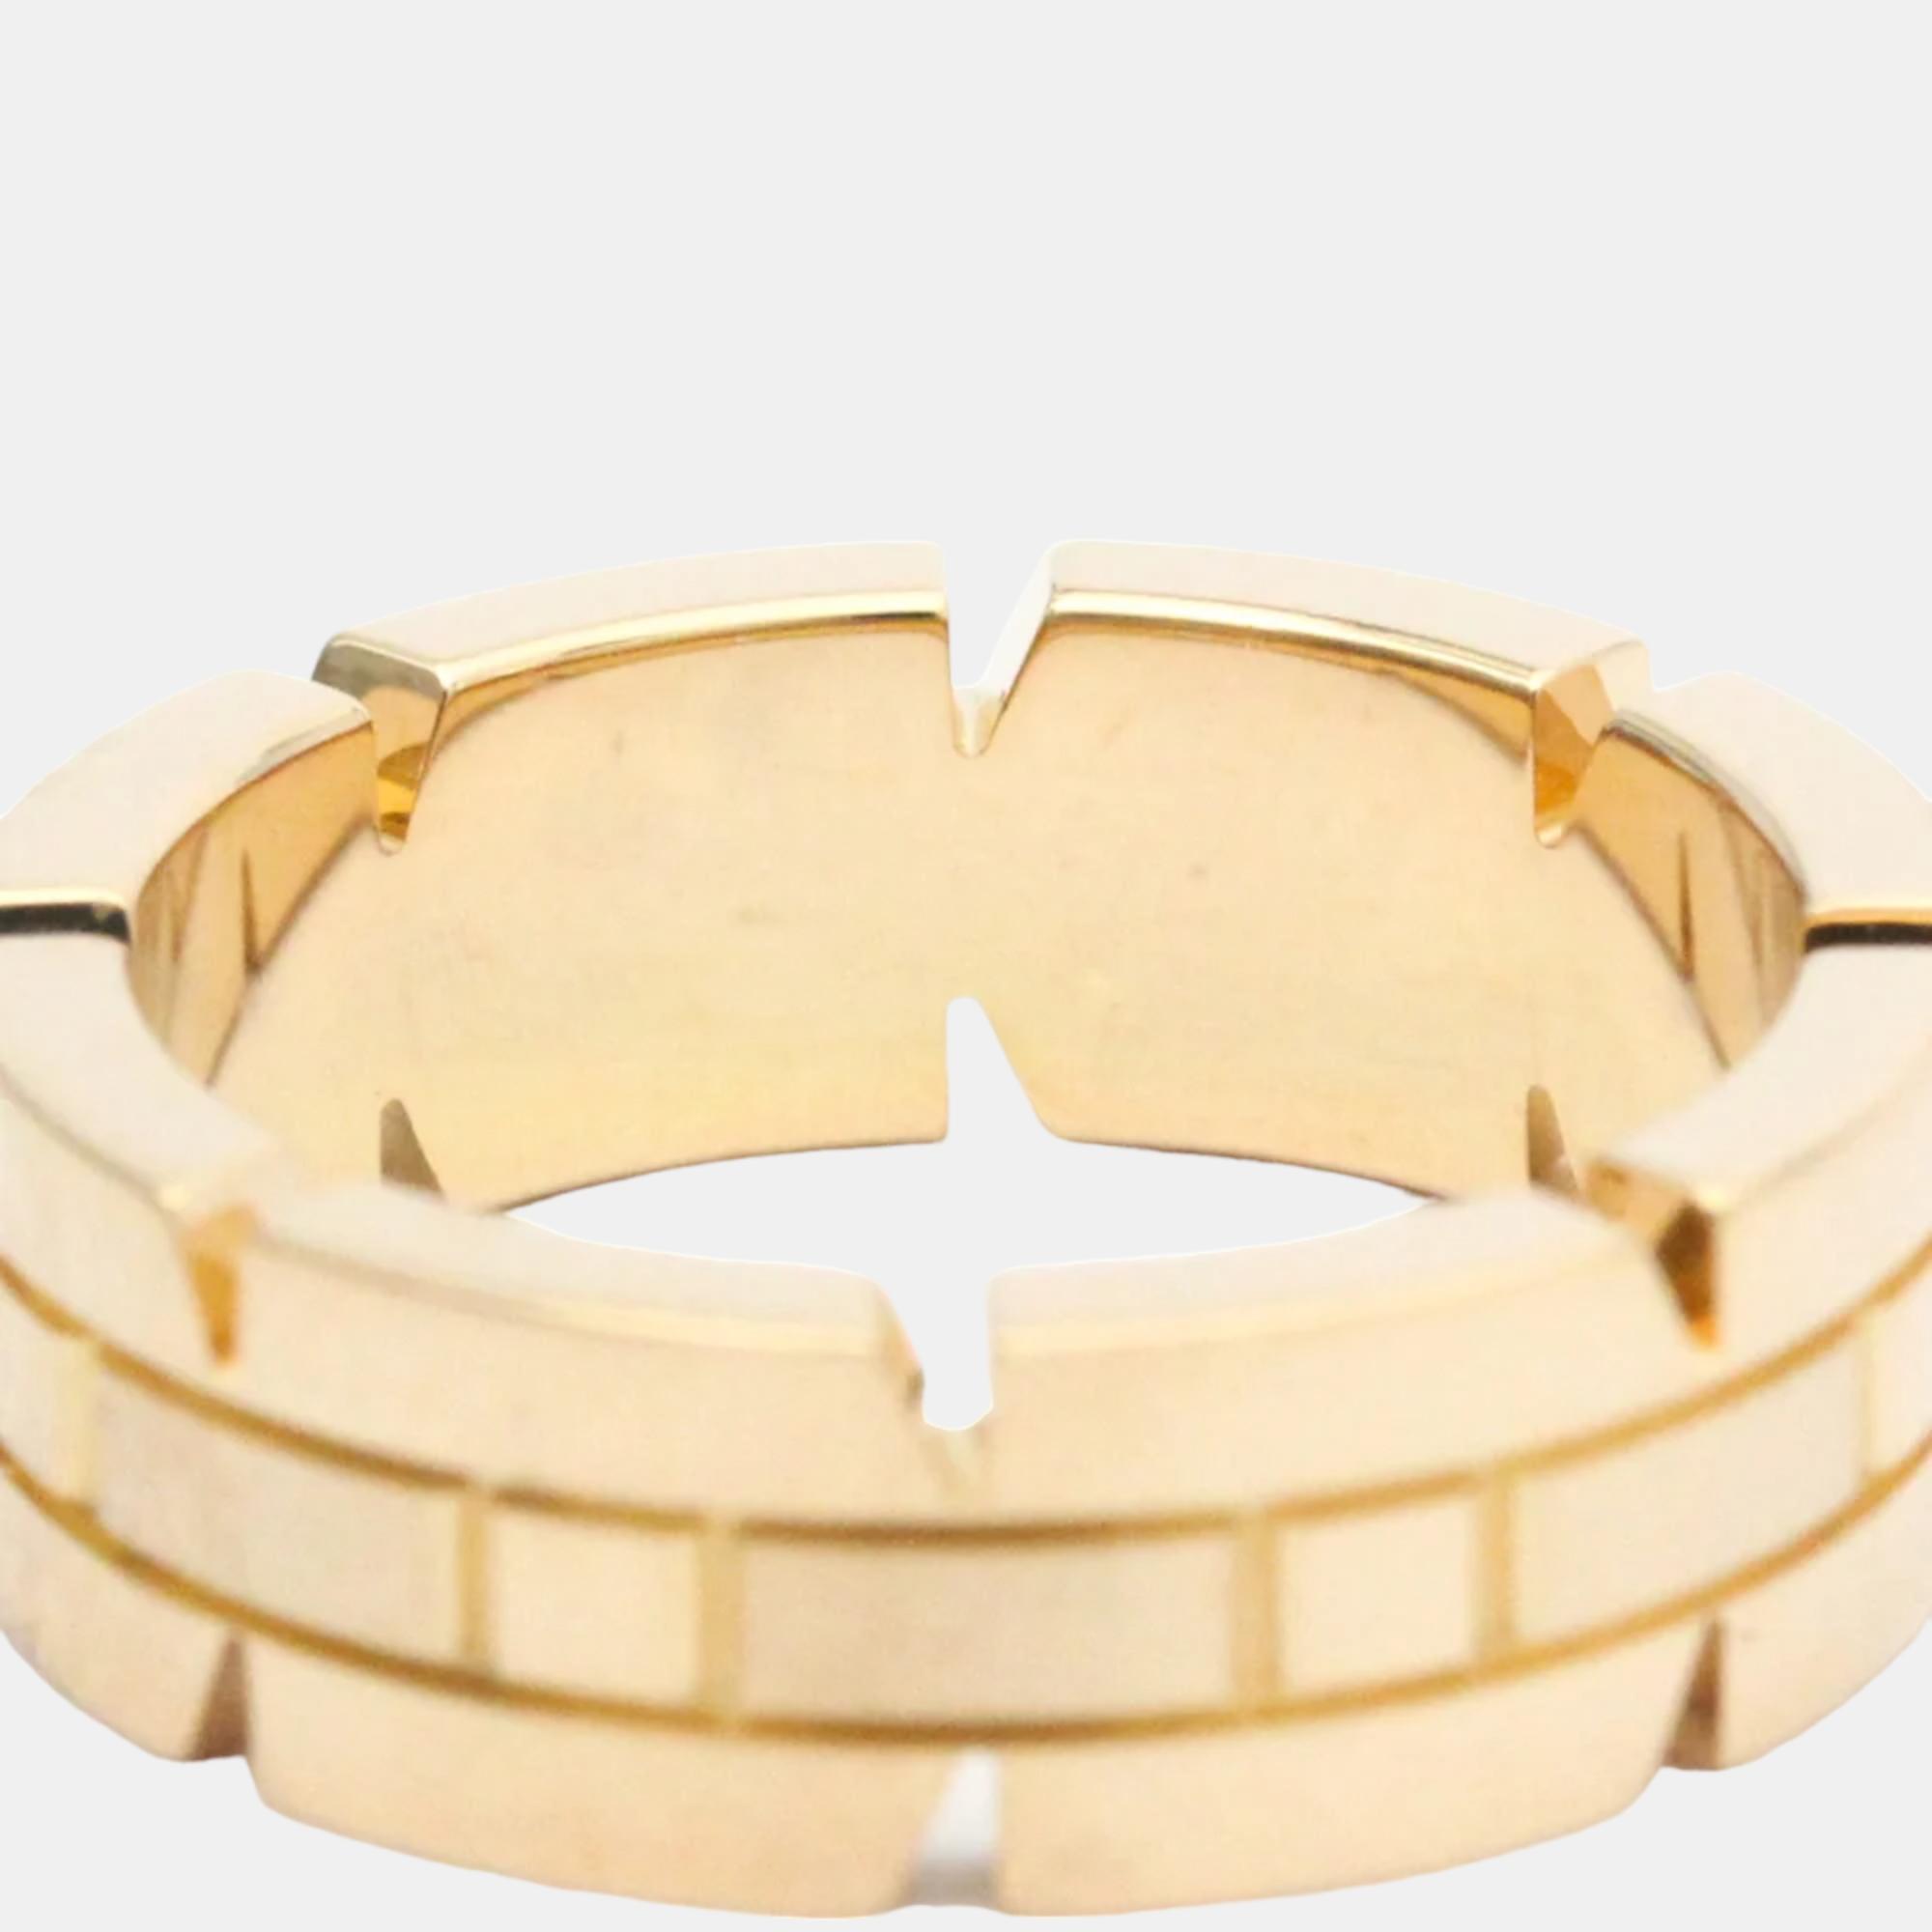 Cartier Tank Francaise 18K Yellow Gold Ring EU 49